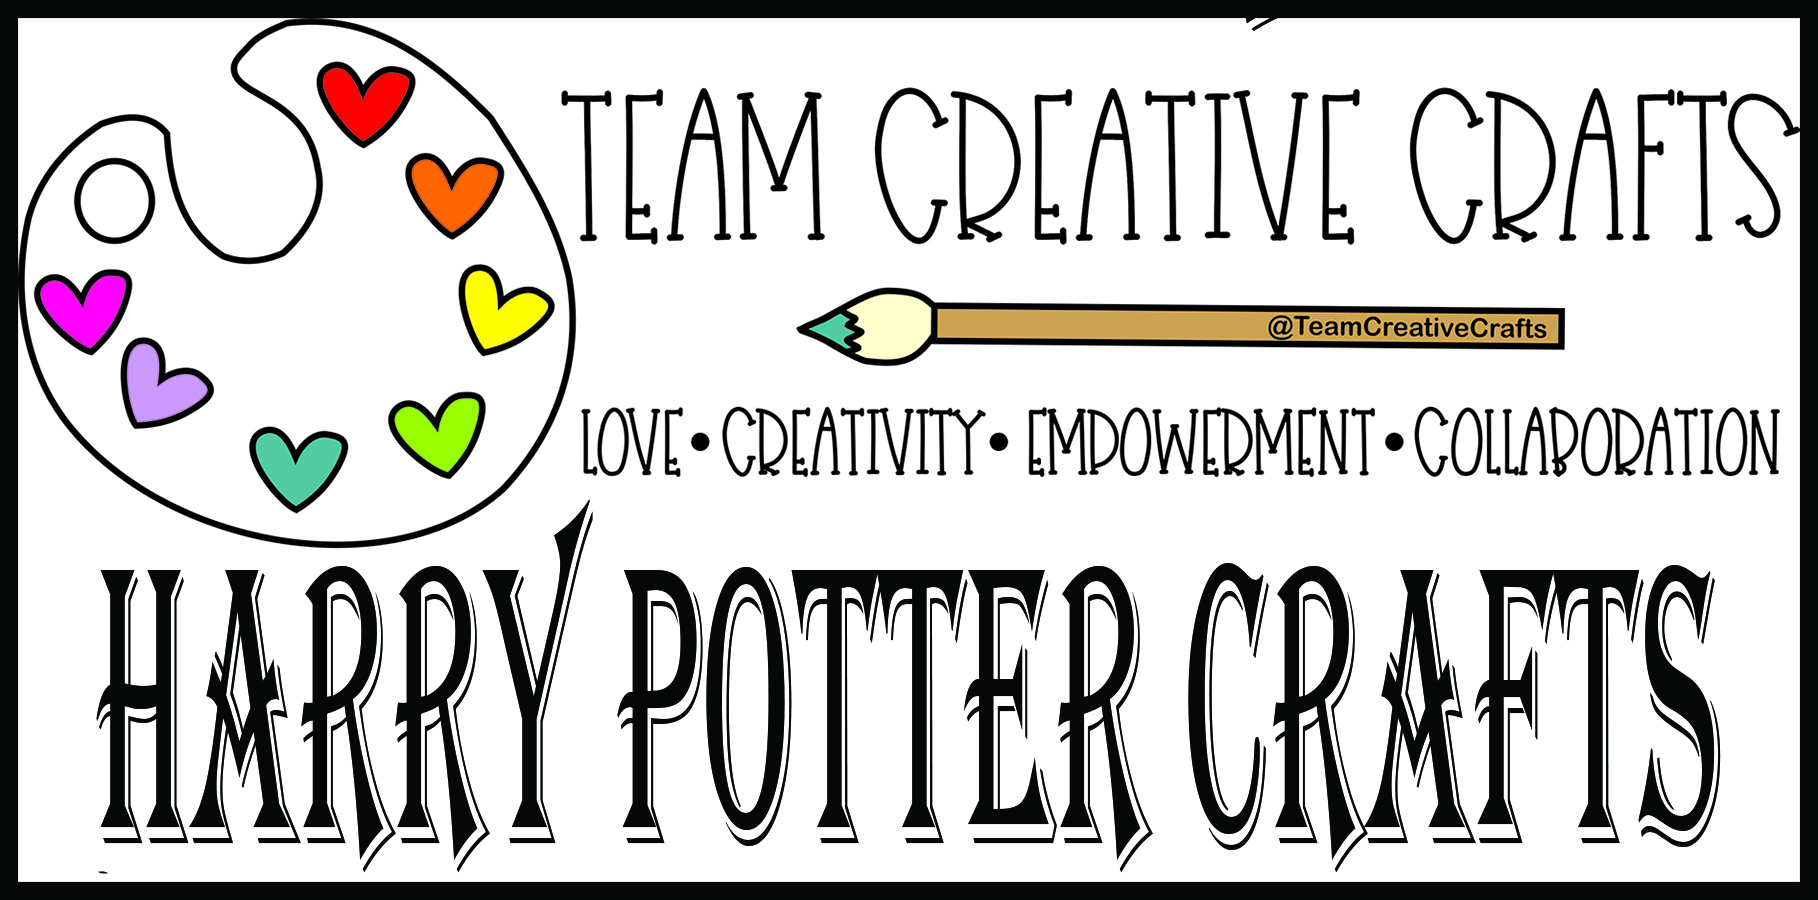 3 Creative DIY Harry Potter Crafts - FeltMagnet